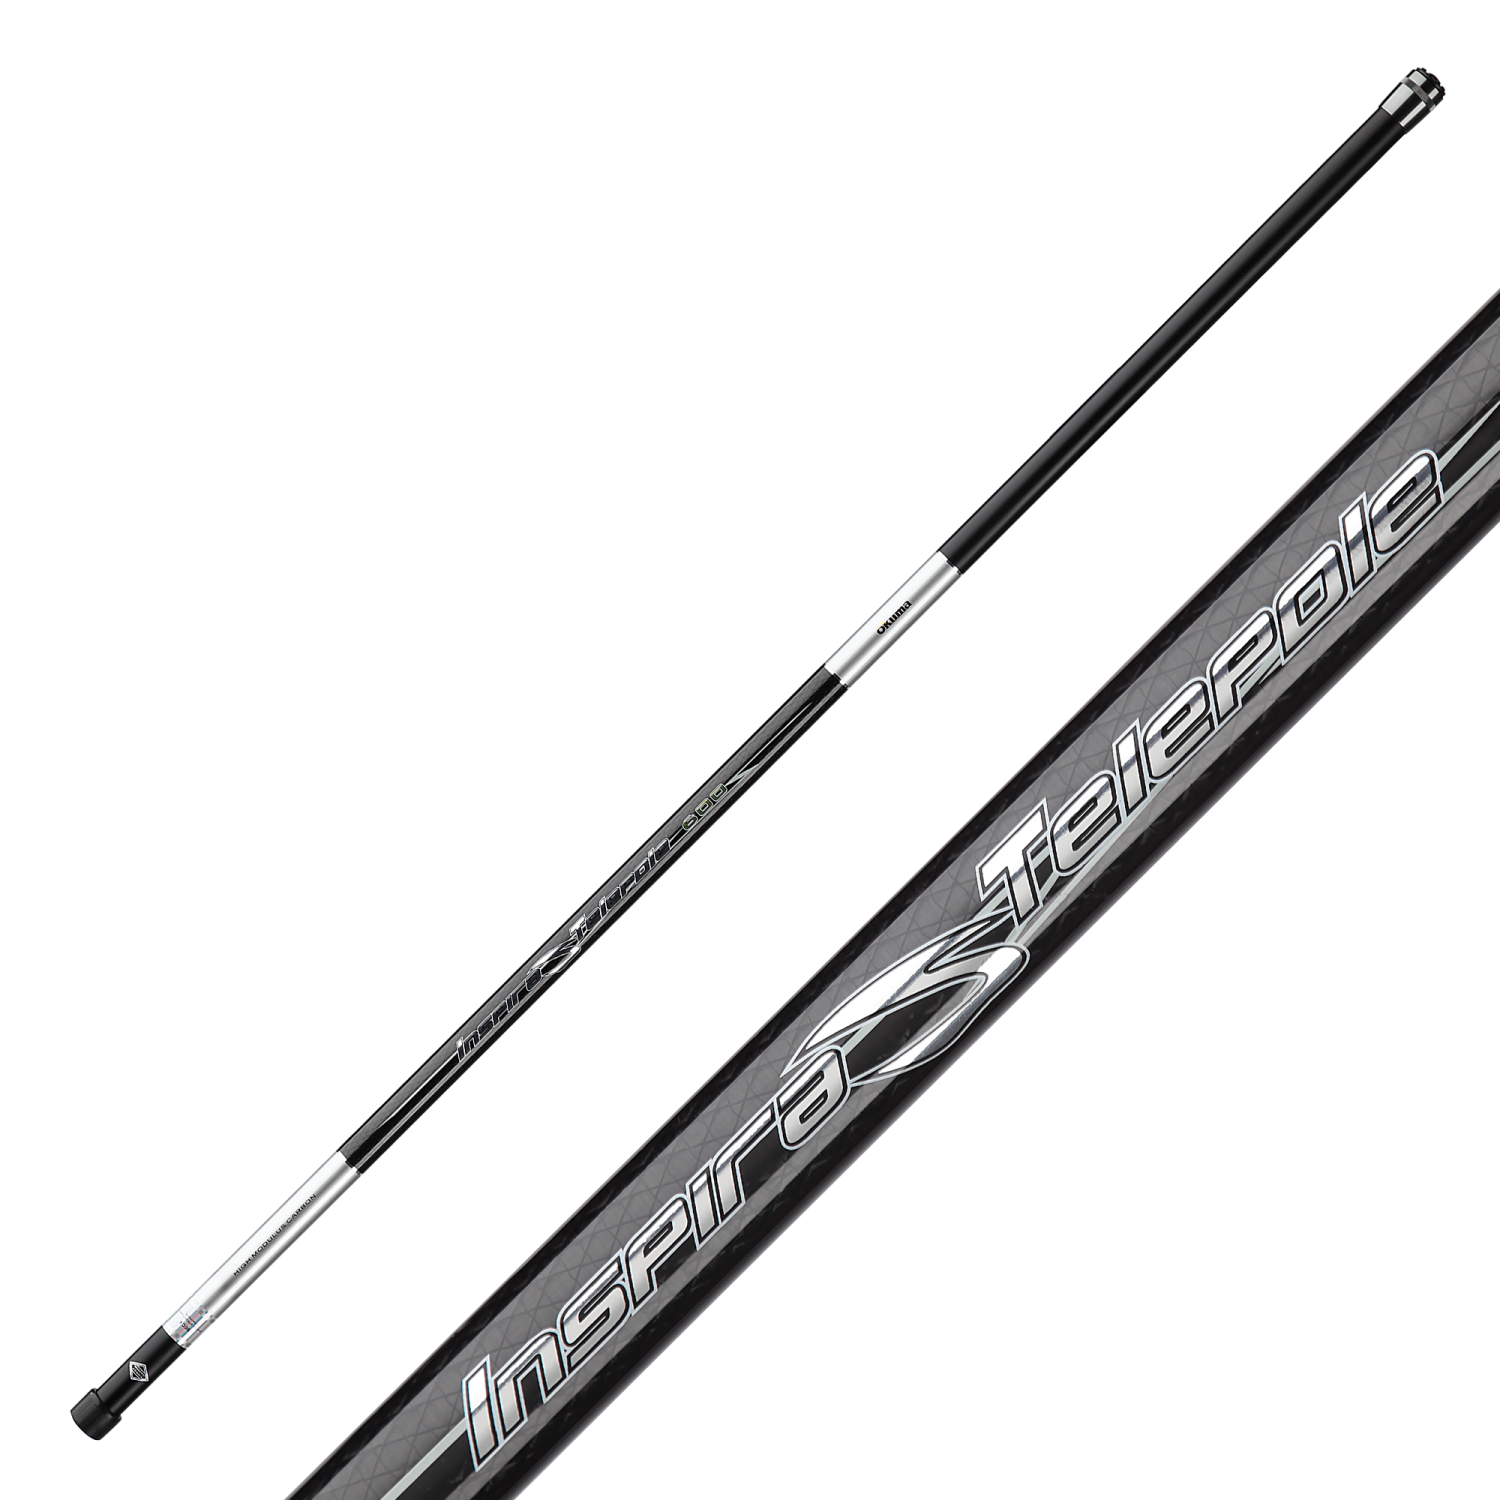 Удилище маховое Okuma Inspira Tele Pole 5005M удилище okuma carbonite tele spin 3 00m up to 90g 6sec